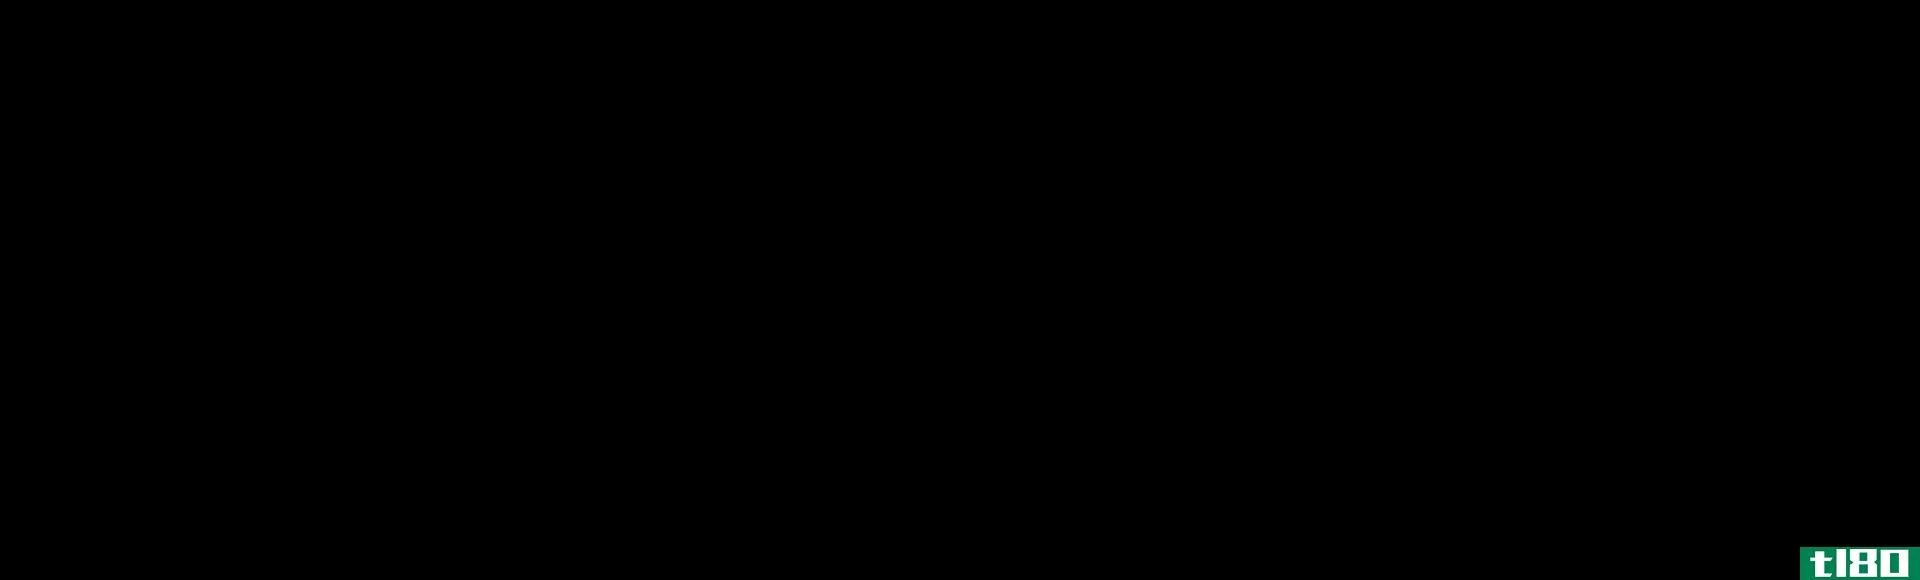 全氟辛烷磺酸(pfas)和全氟辛烷磺酸(pfos)的区别